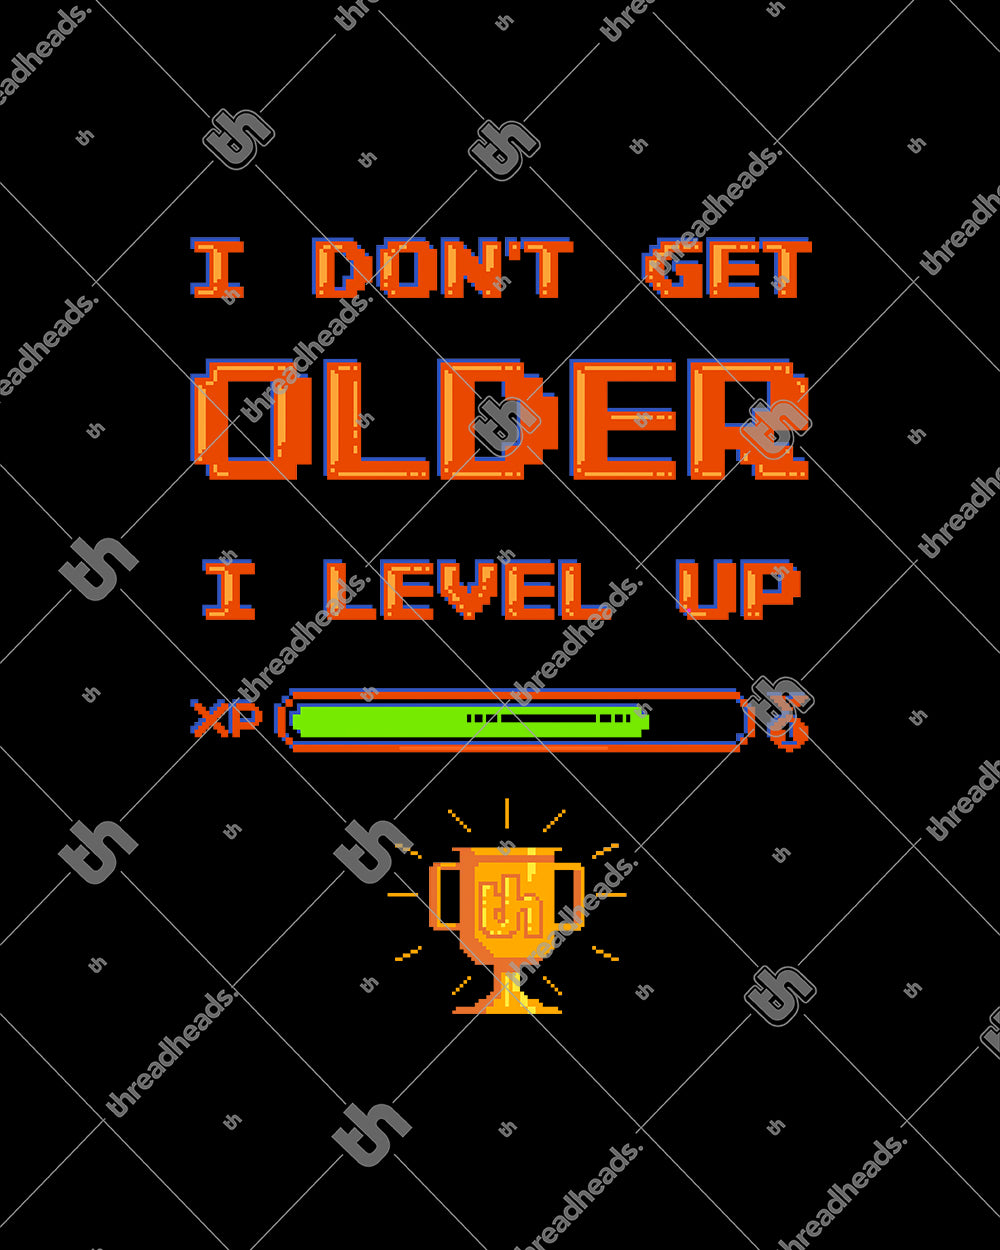 I Don't Get Older I Level Up T-Shirt Australia Online #colour_black